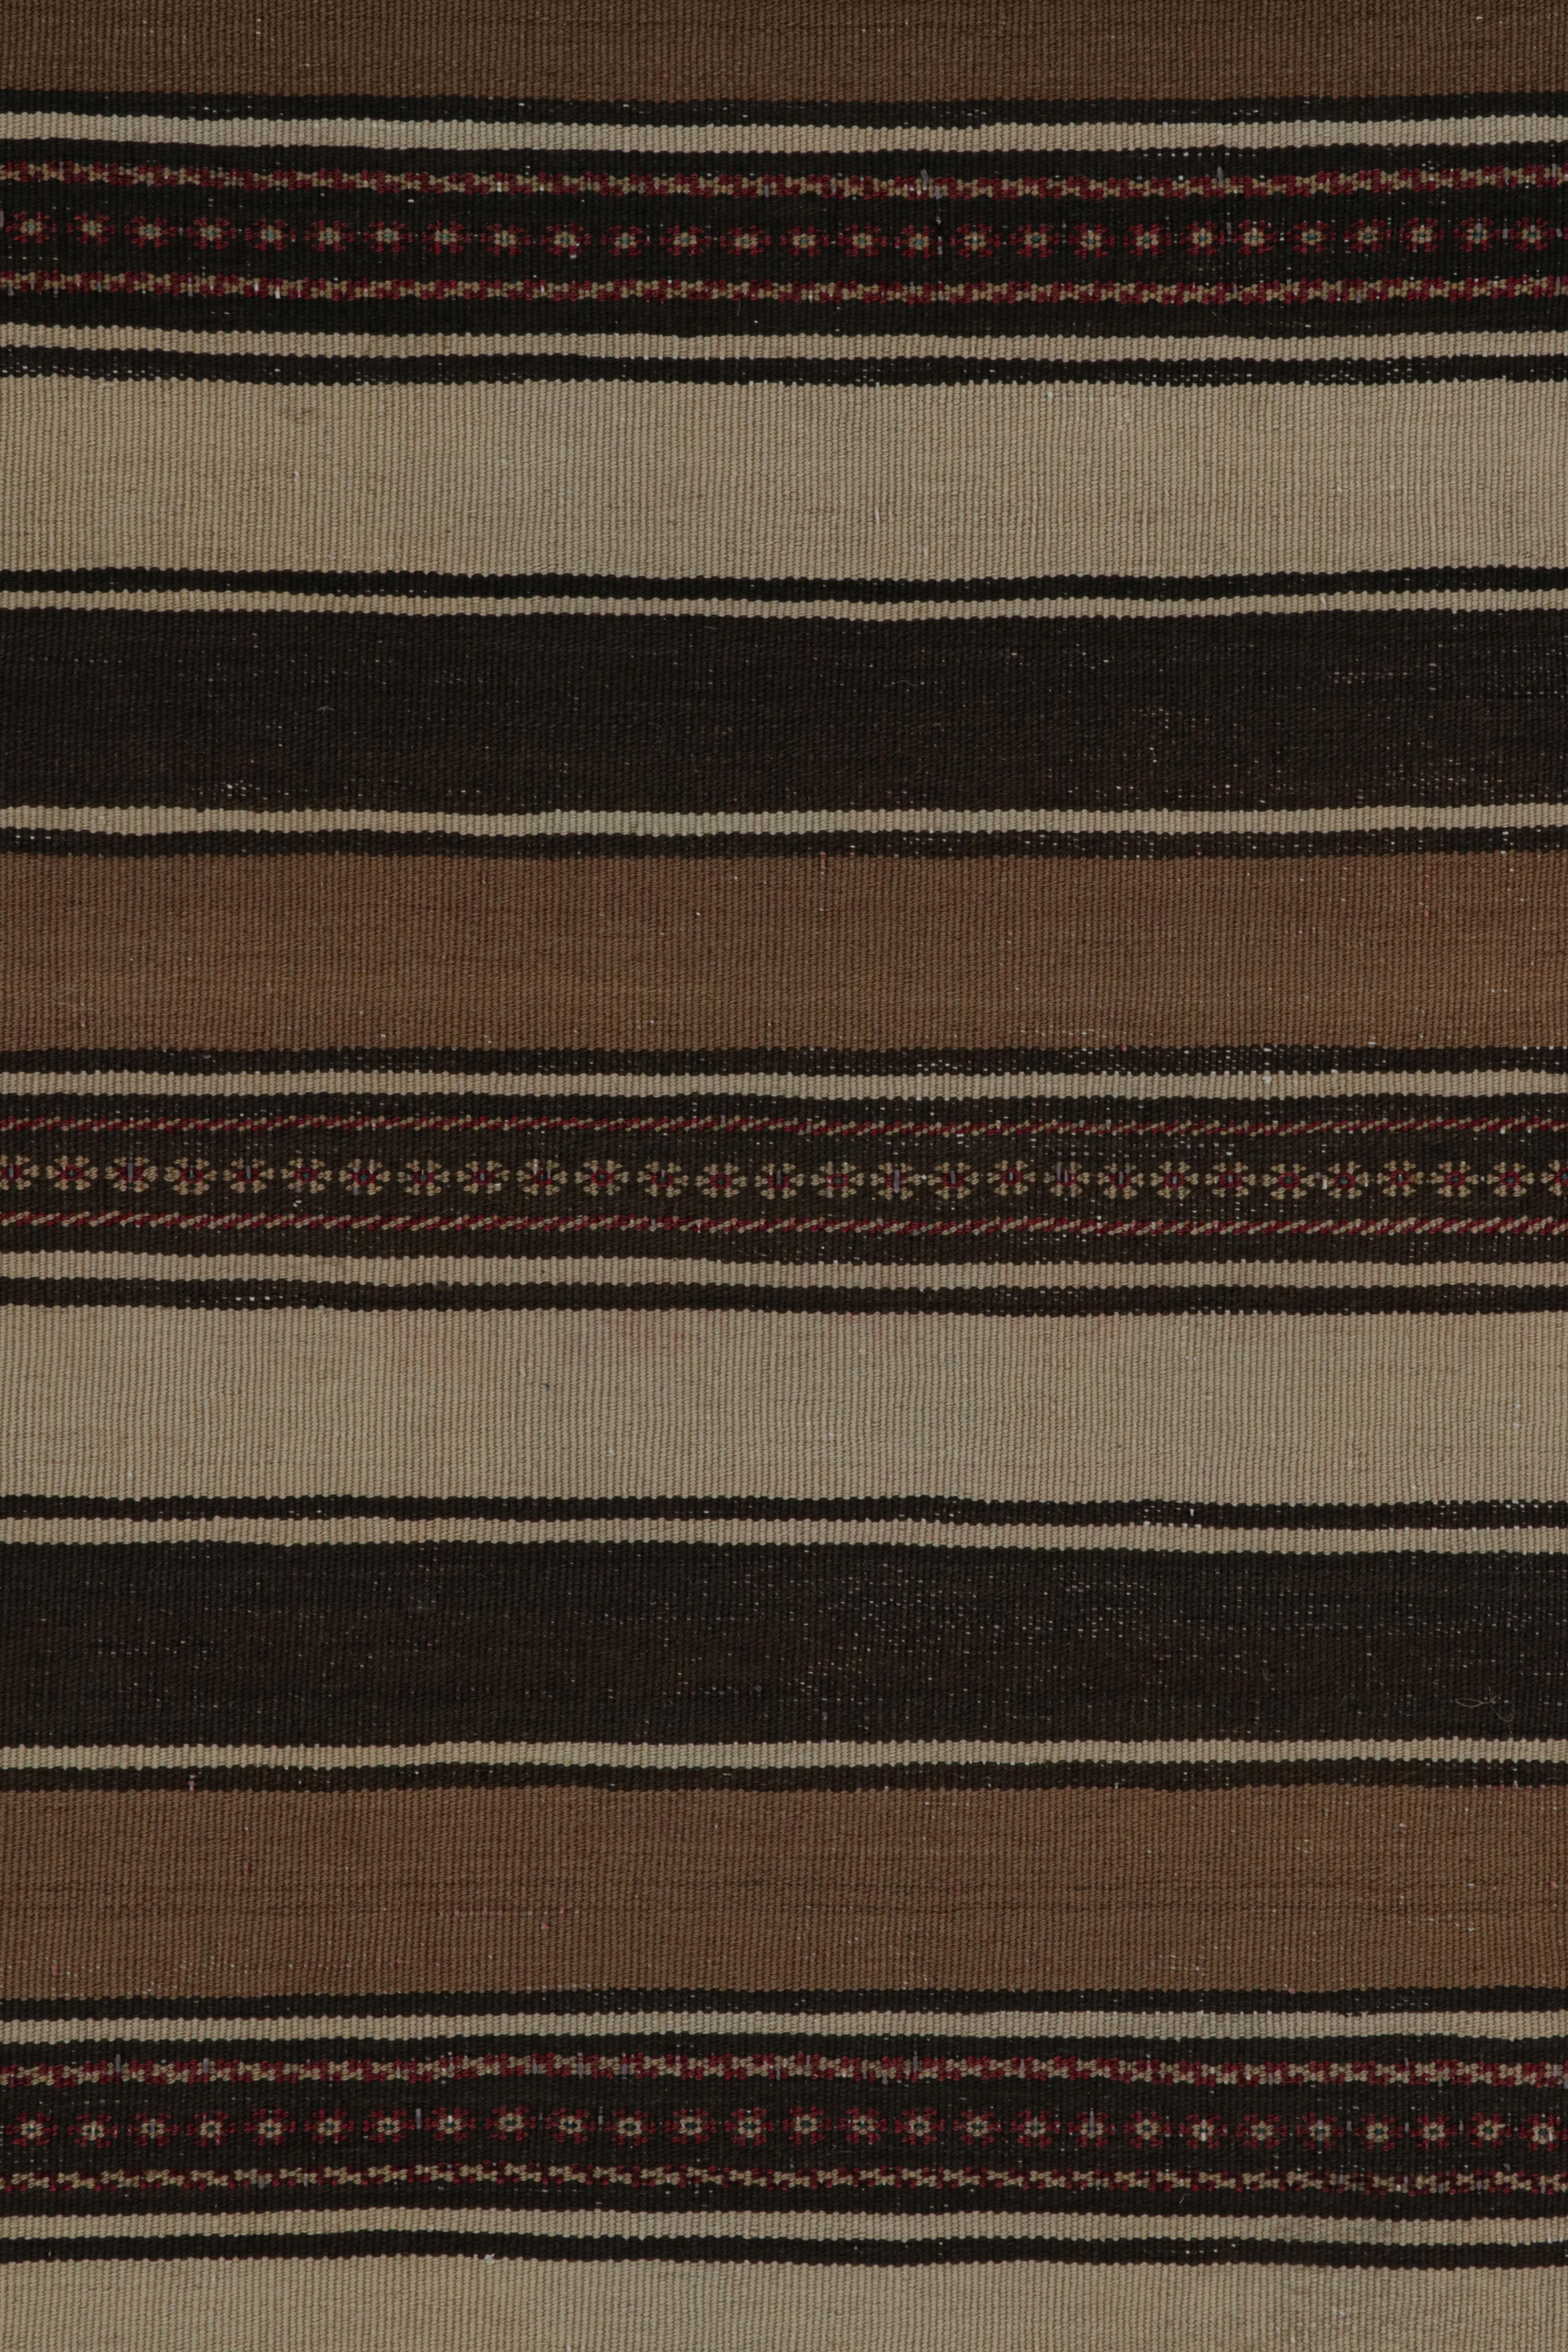 Wool Vintage Afghan Tribal Kilim rug, with Beige/Brown Stripes, from Rug & Kilim For Sale